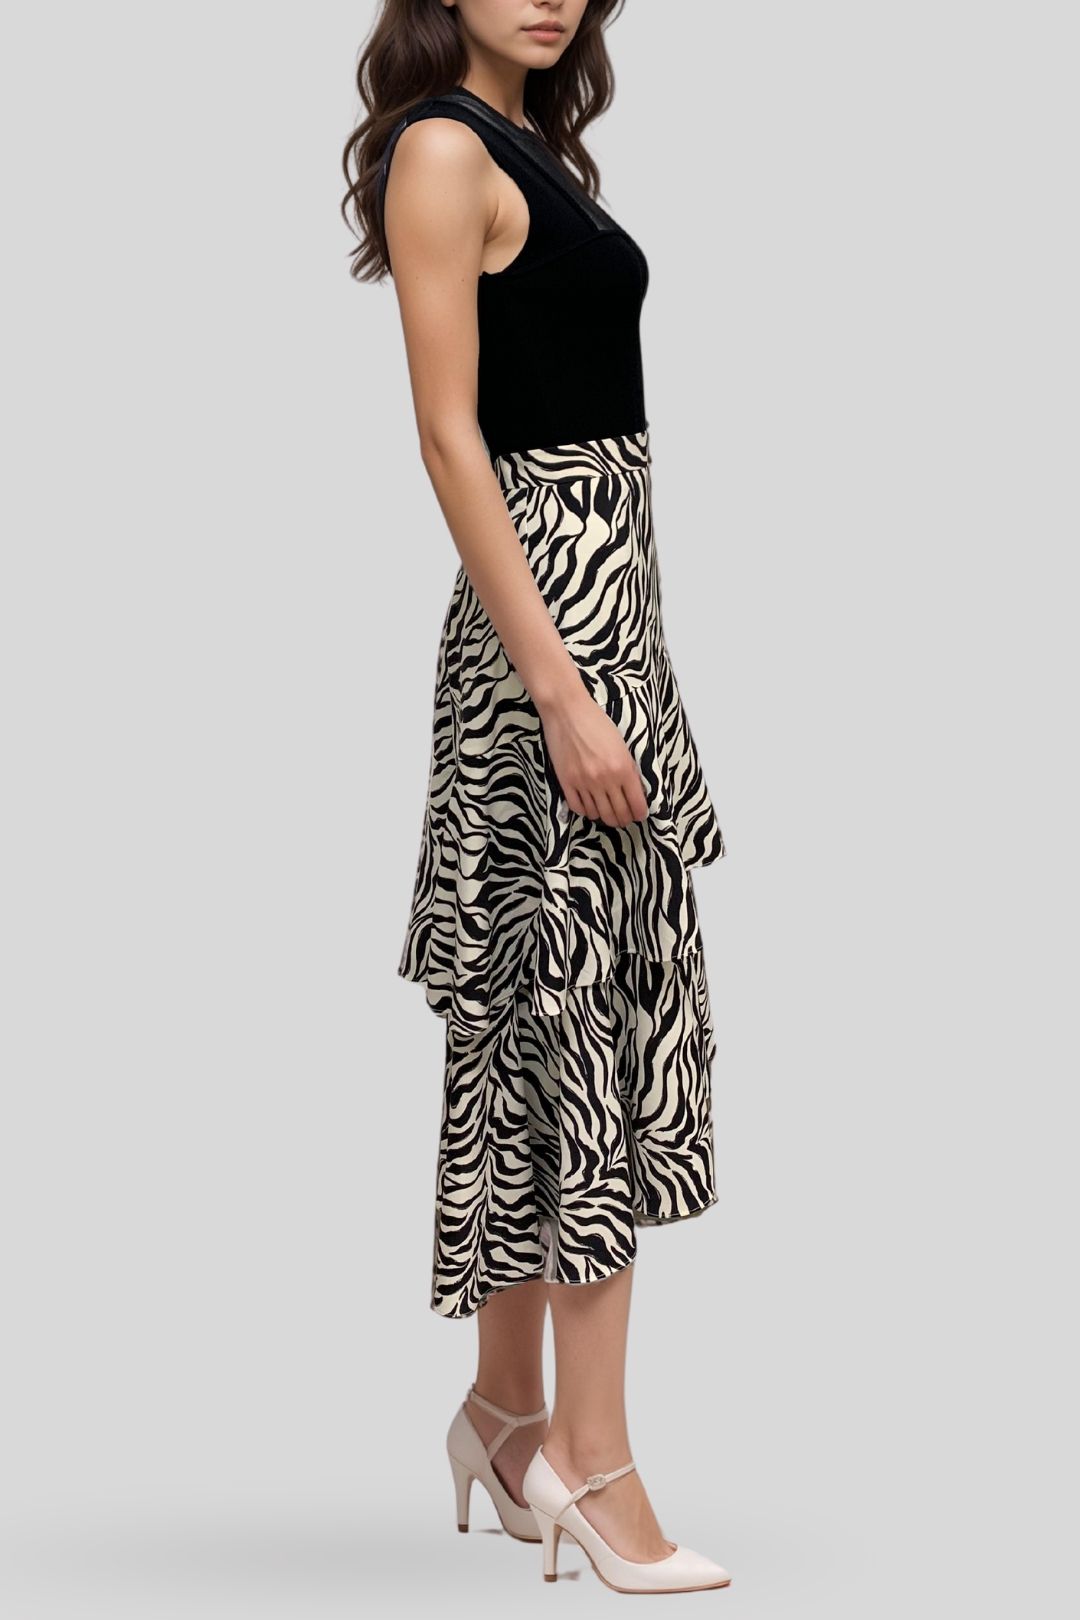 Veronika Maine Layered Zebra Print Skirt